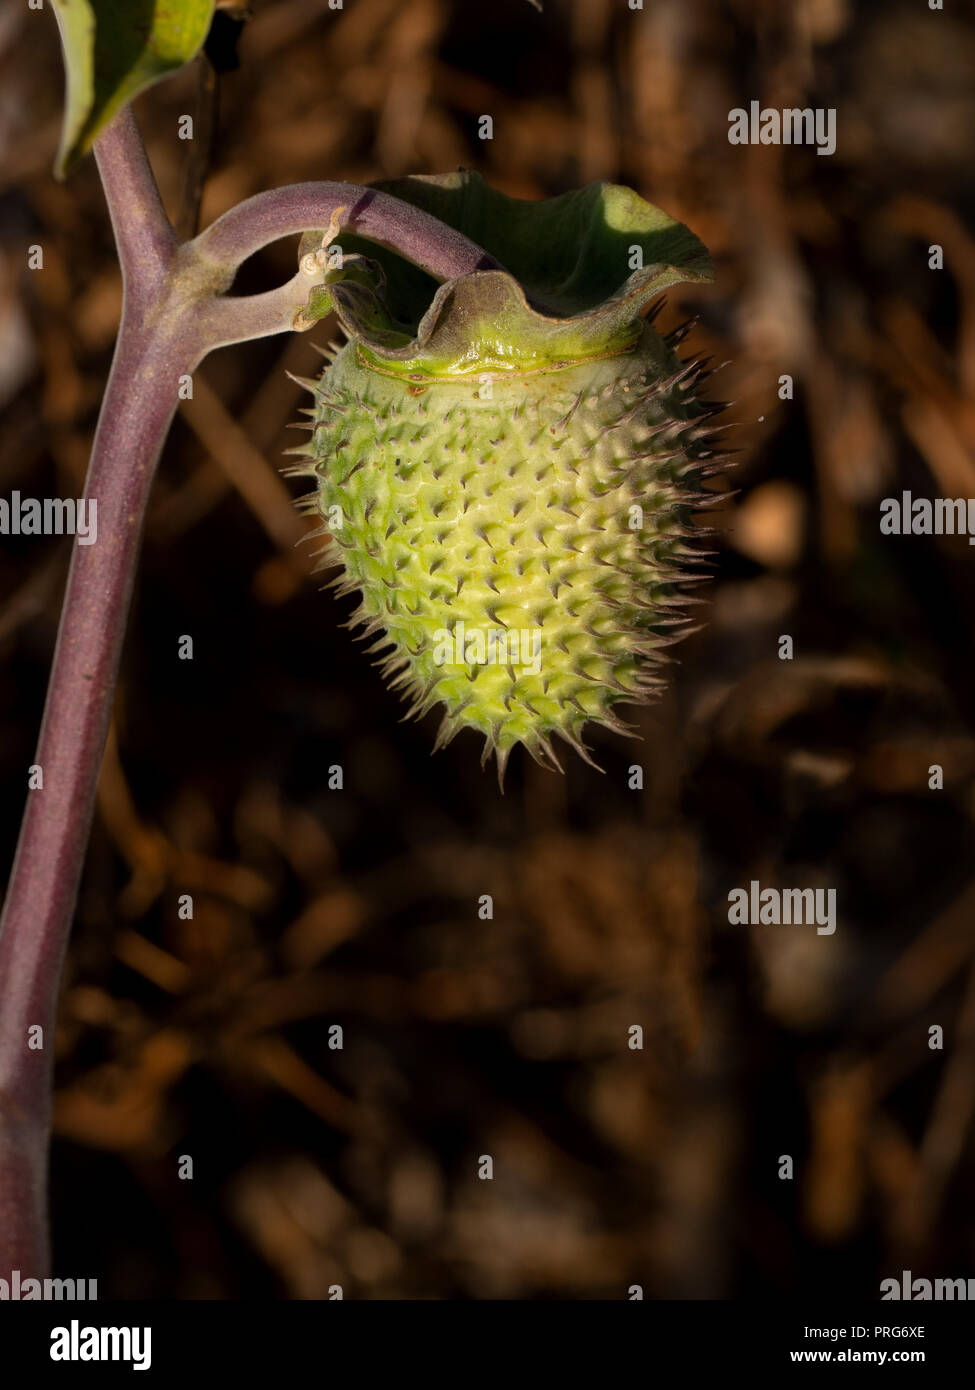 Stechapfel Blüte seedhand im Herbst Sonne. Spikey, Spitzen und giftig, sondern schön. Aka Teufel Trompete. Stockfoto